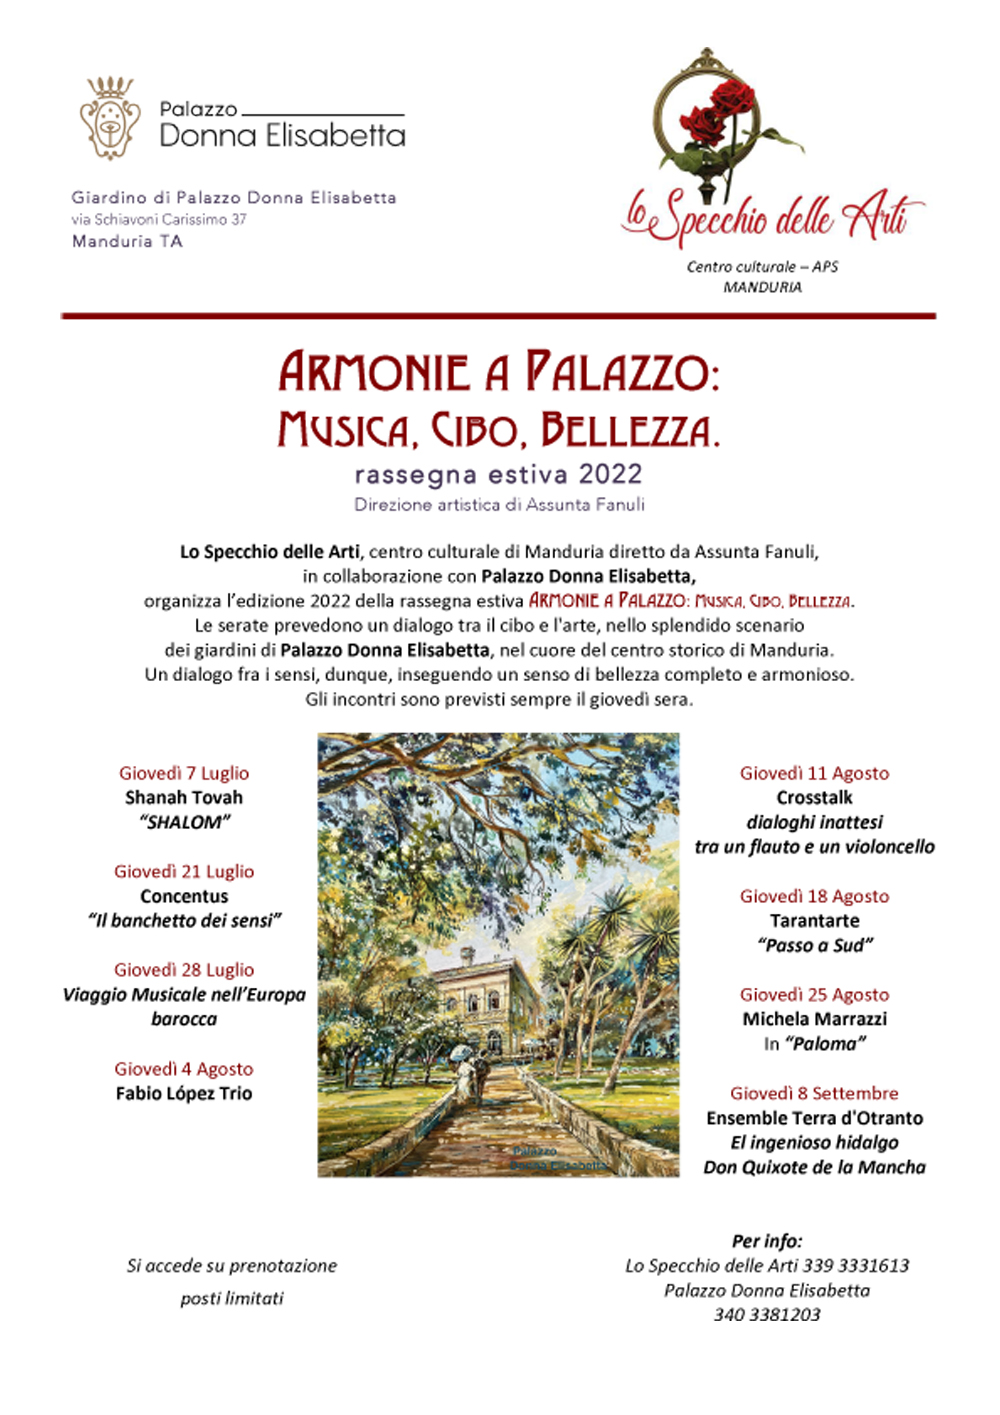 MANDURIA. Seconda edizione della rassegna Armonie a Palazzo,  con la direzione artistica di Assunta Fanuli